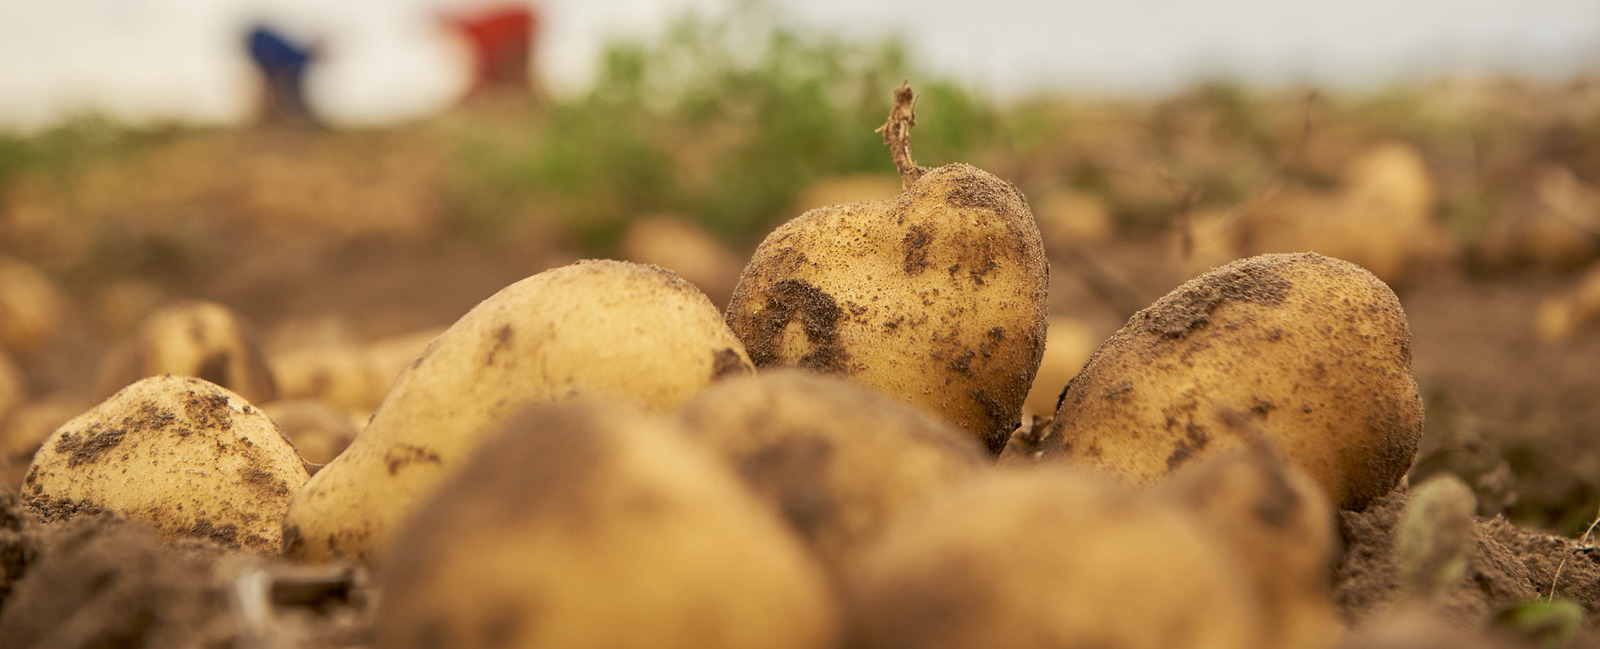 Melhorar a qualidade das batatas